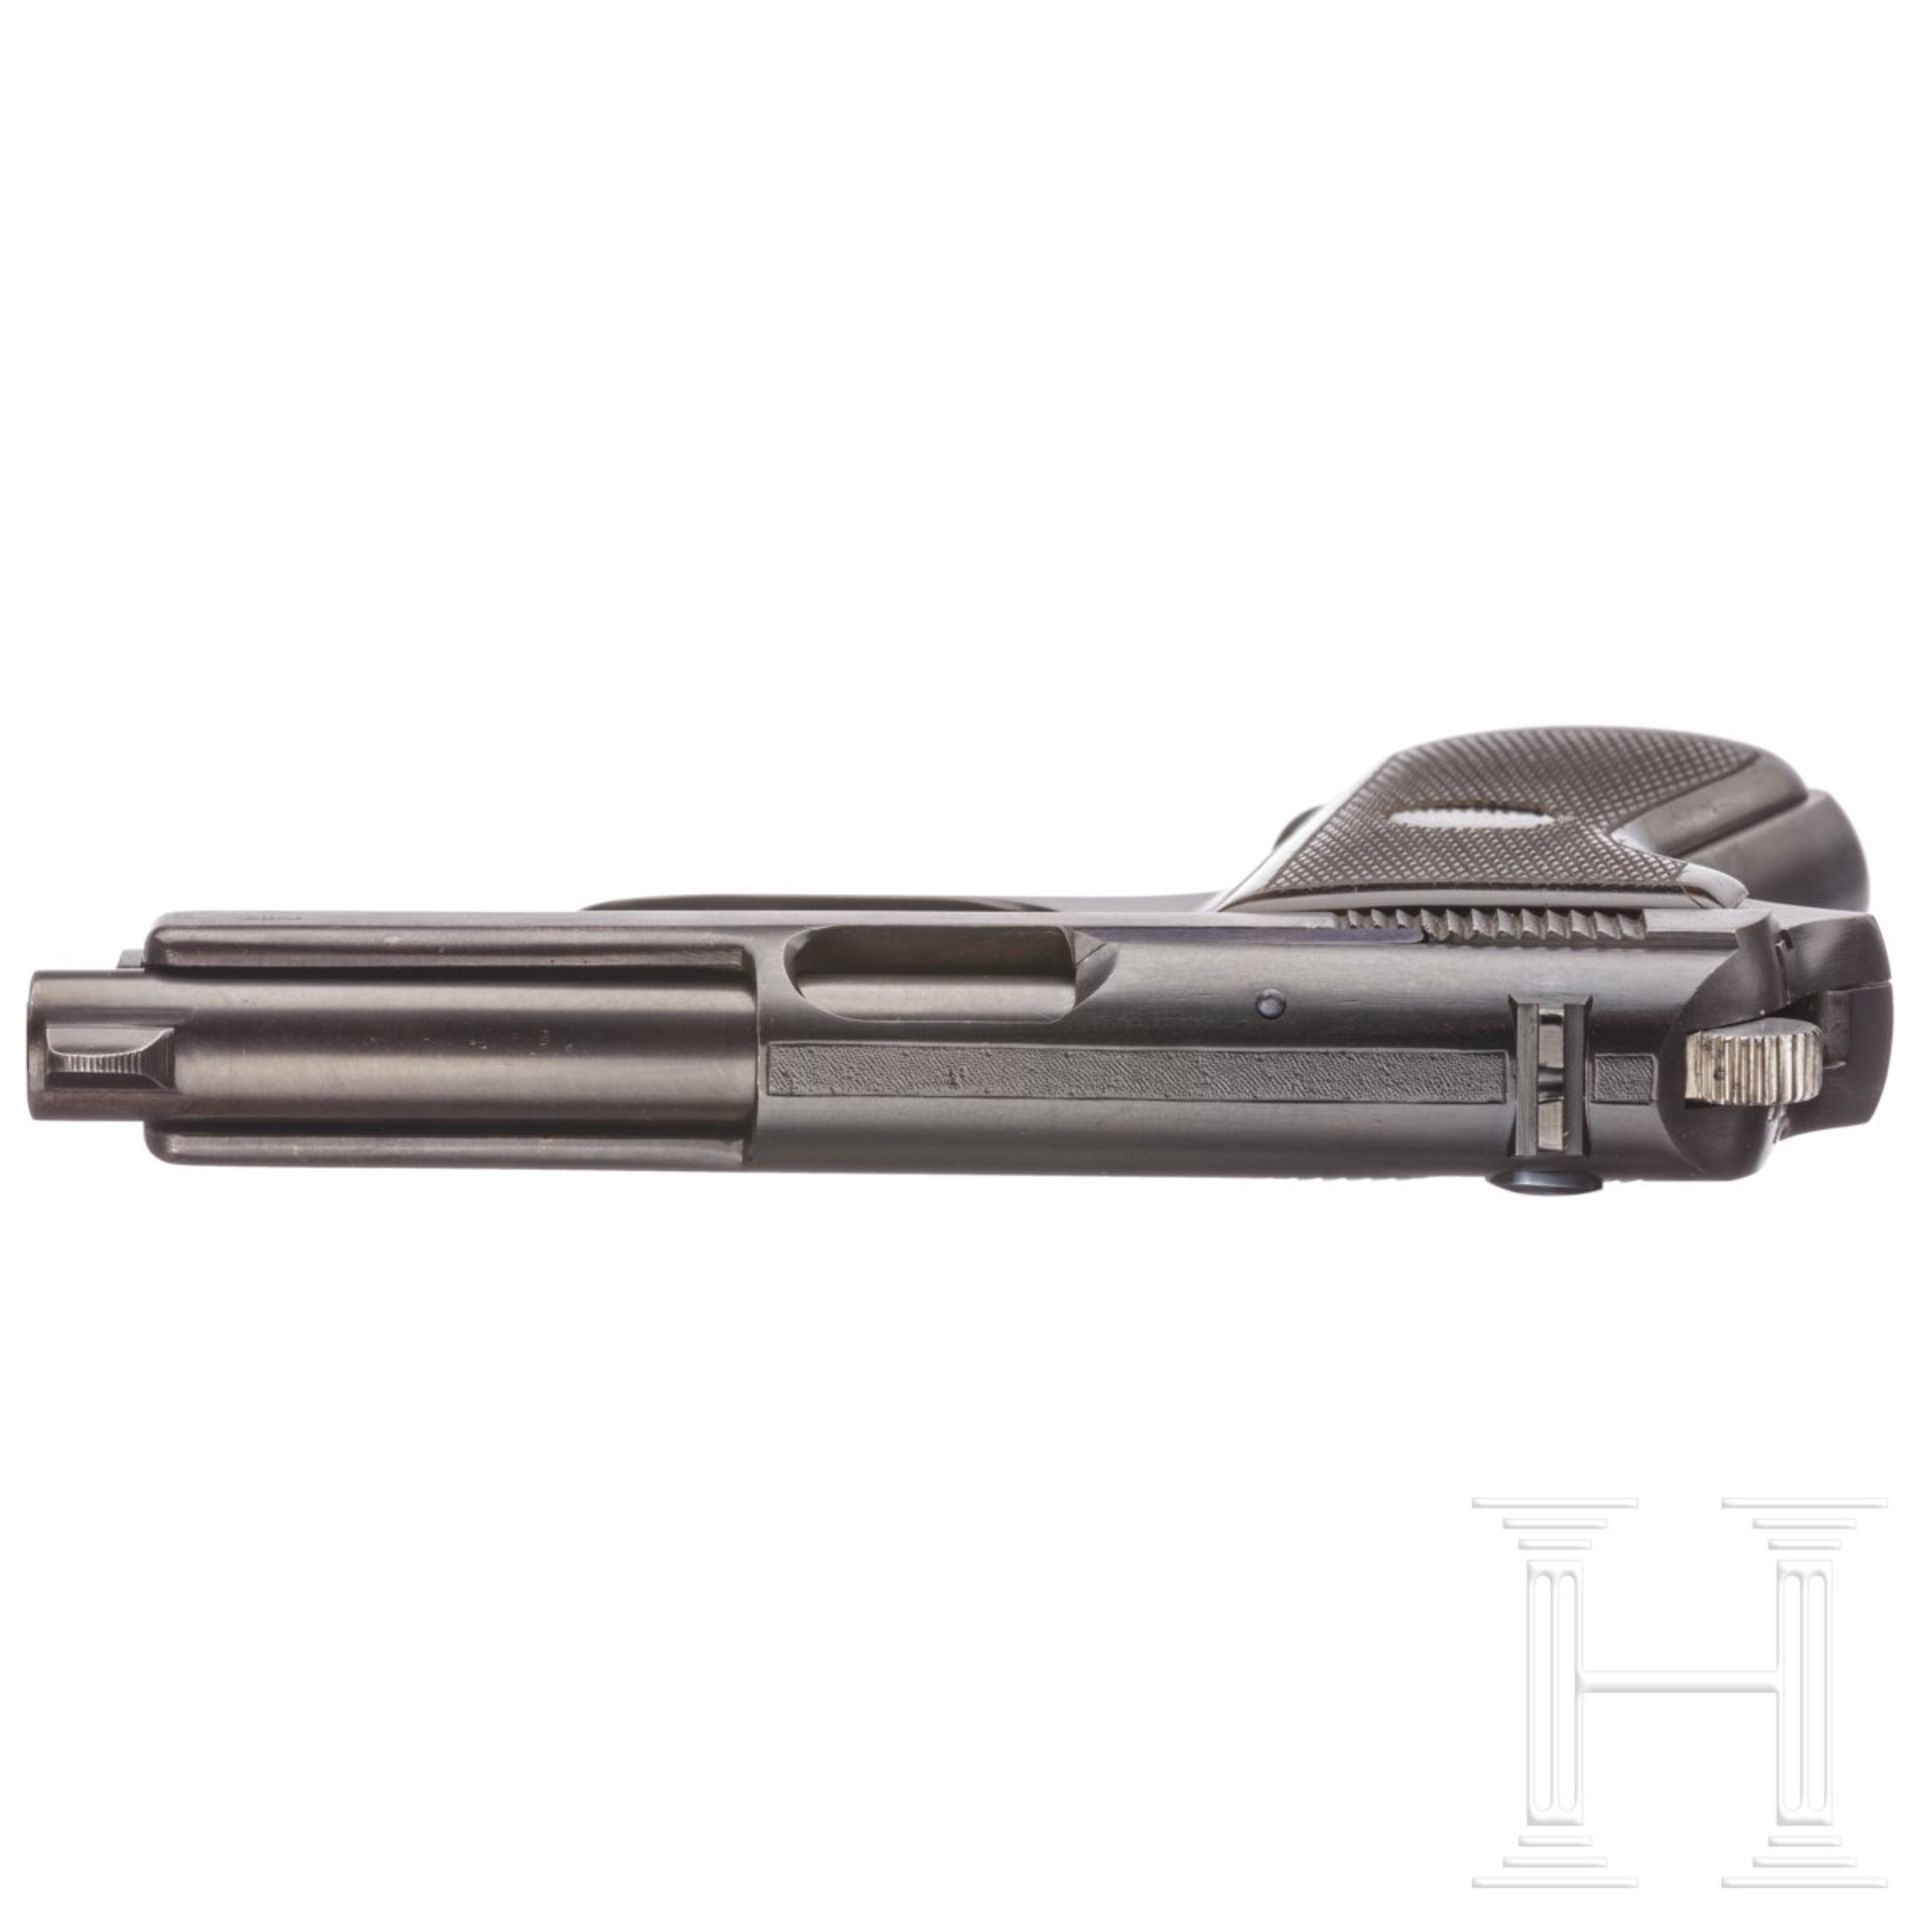 Mauser Selbstladepistole - Prototyp mit Hahn und Revolverspannung - Bild 4 aus 5